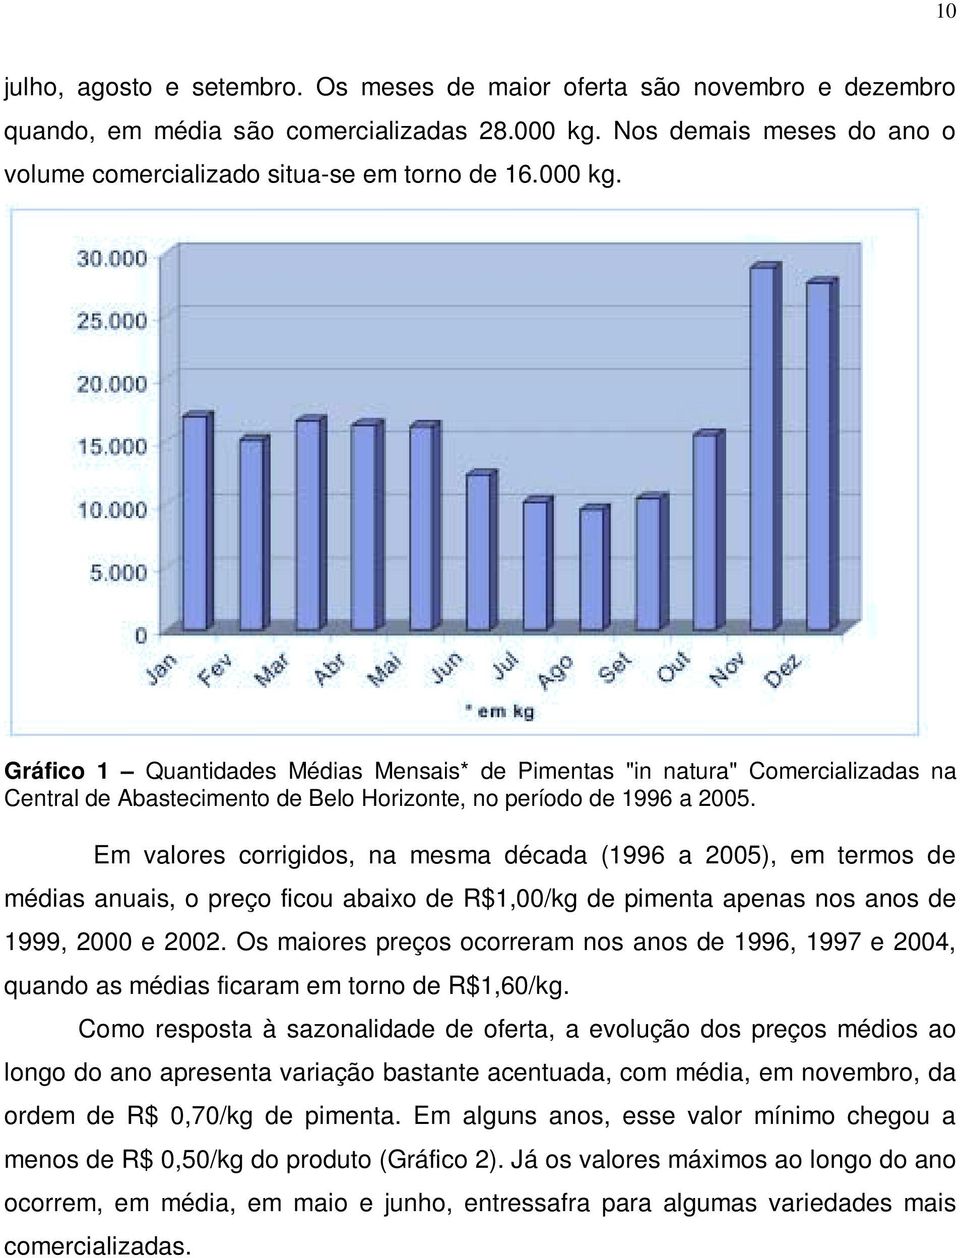 Em valores corrigidos, na mesma década (1996 a 2005), em termos de médias anuais, o preço ficou abaixo de R$1,00/kg de pimenta apenas nos anos de 1999, 2000 e 2002.